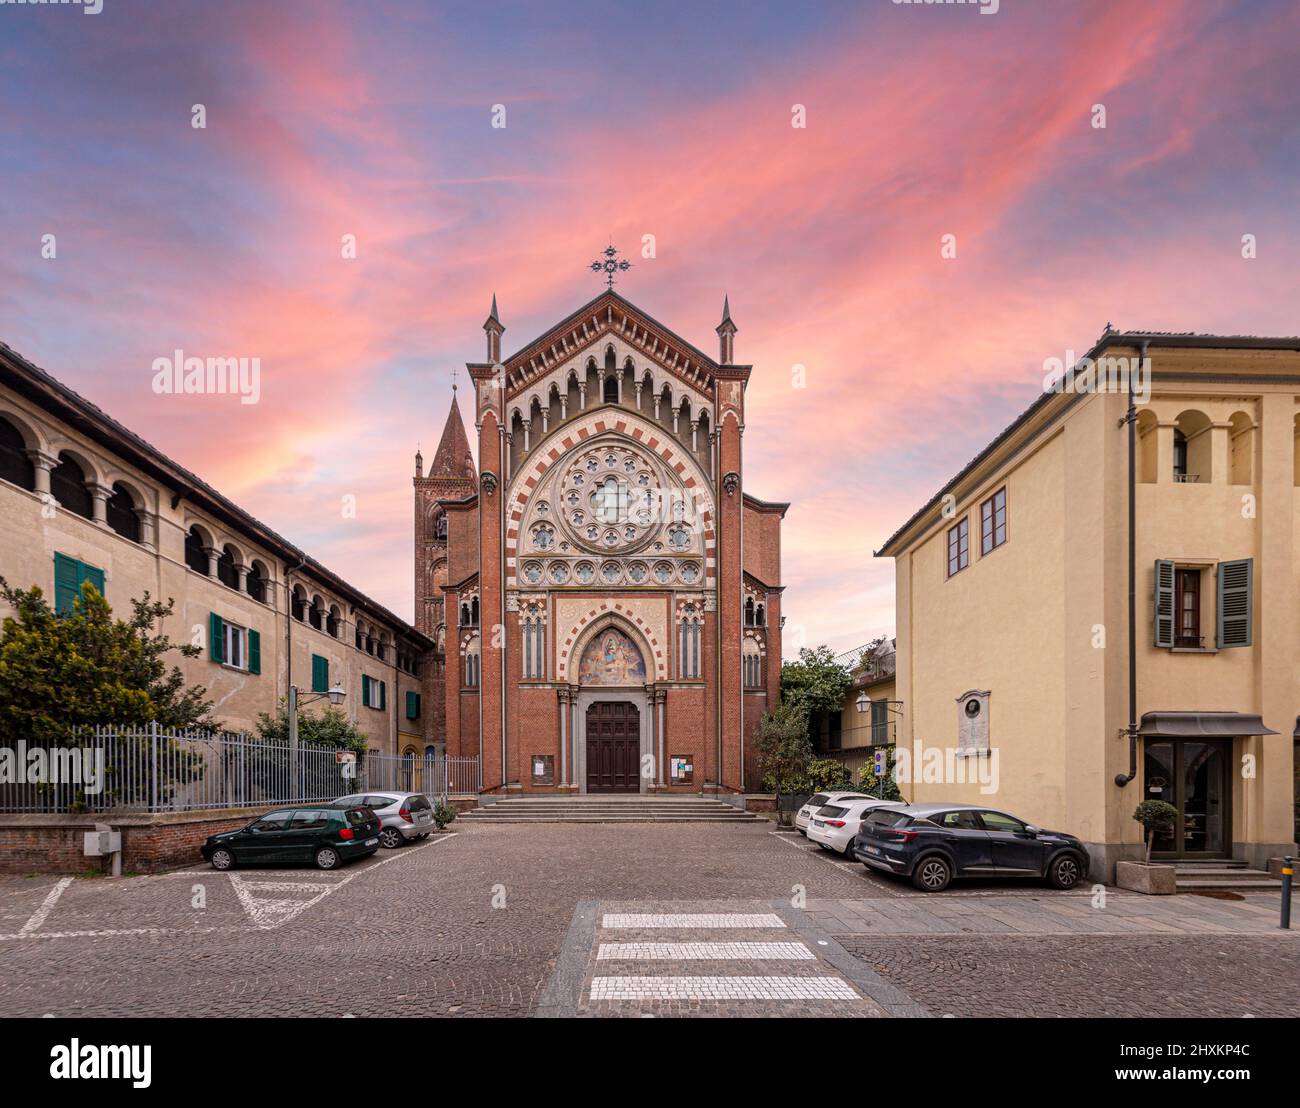 Cavallermaggiore, Italie - 12 mars 2022 : Eglise de Santa Maria della Pieve dans un style gothique éclectique (début 1900s), dans la via Roma, avec ciel de coucher de soleil Banque D'Images